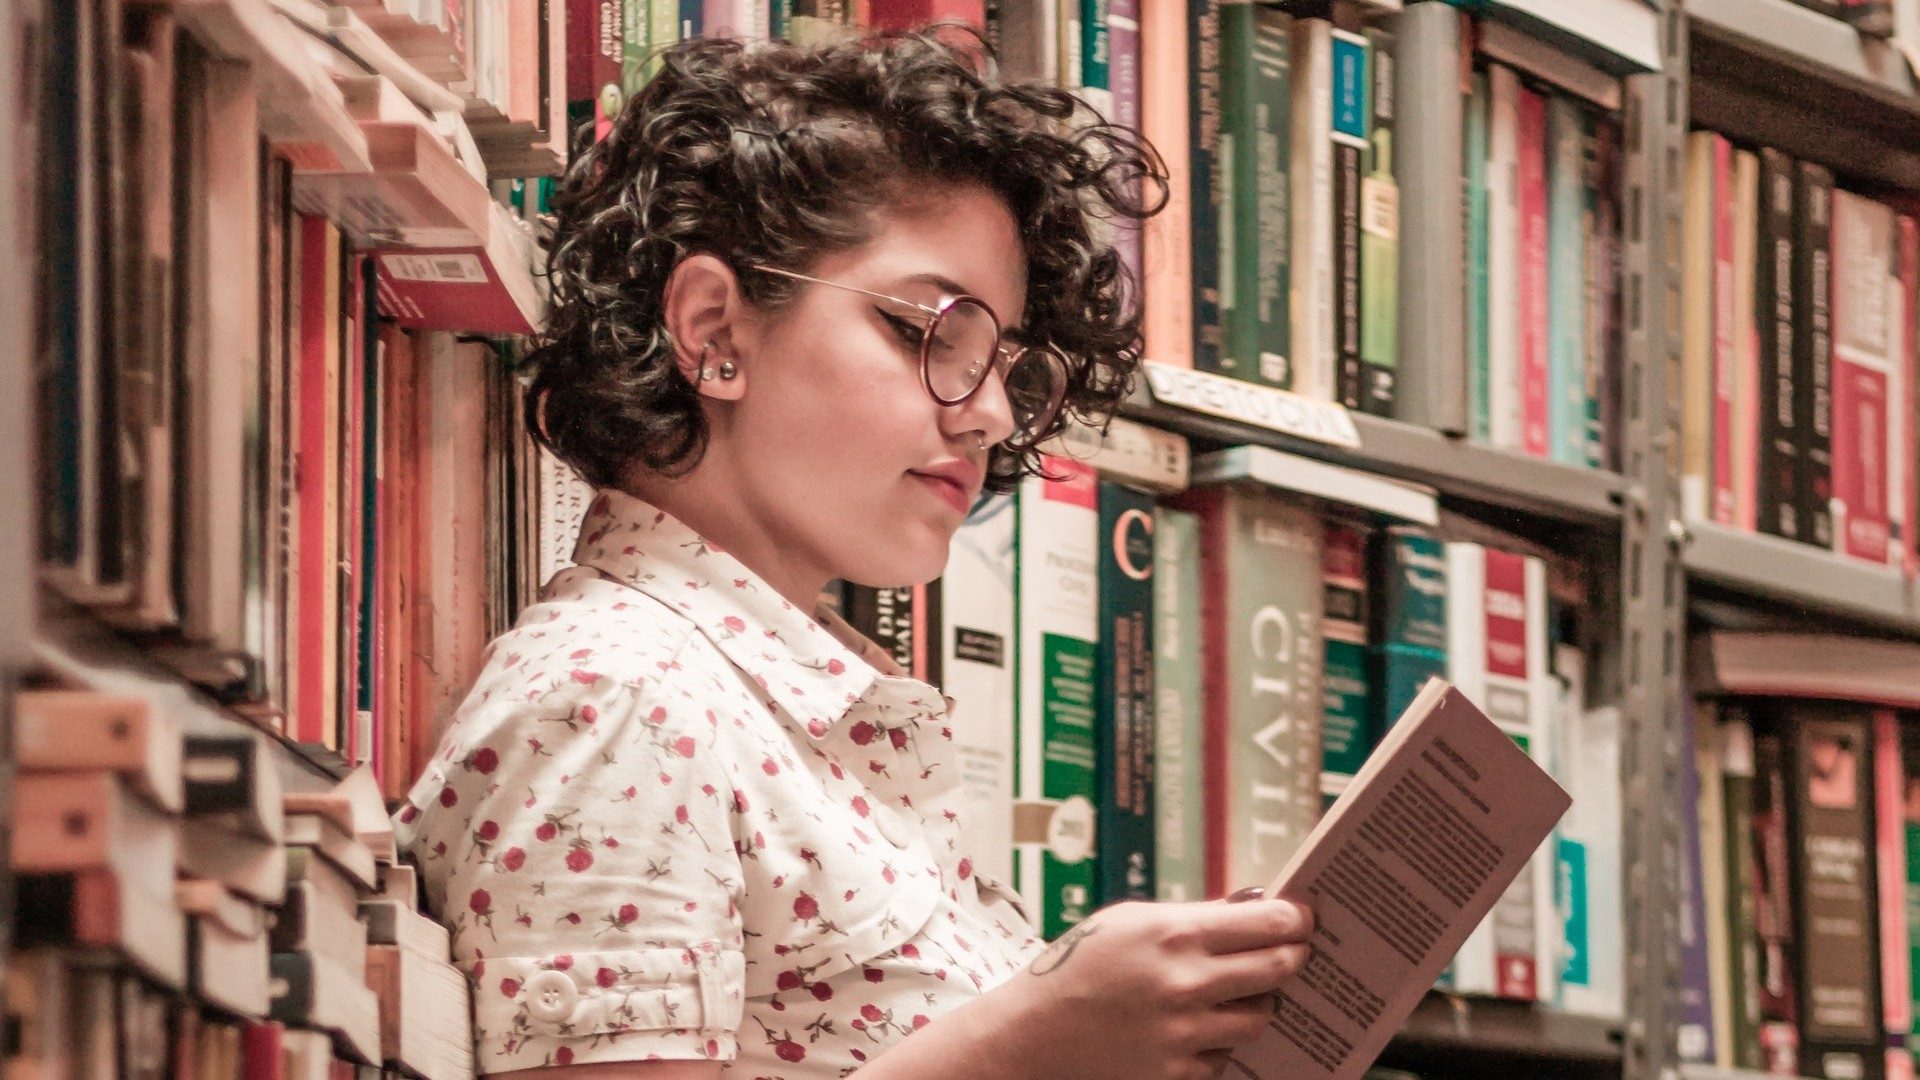 Eine junge Frau liest in einer Bibliothek aus einem Buch